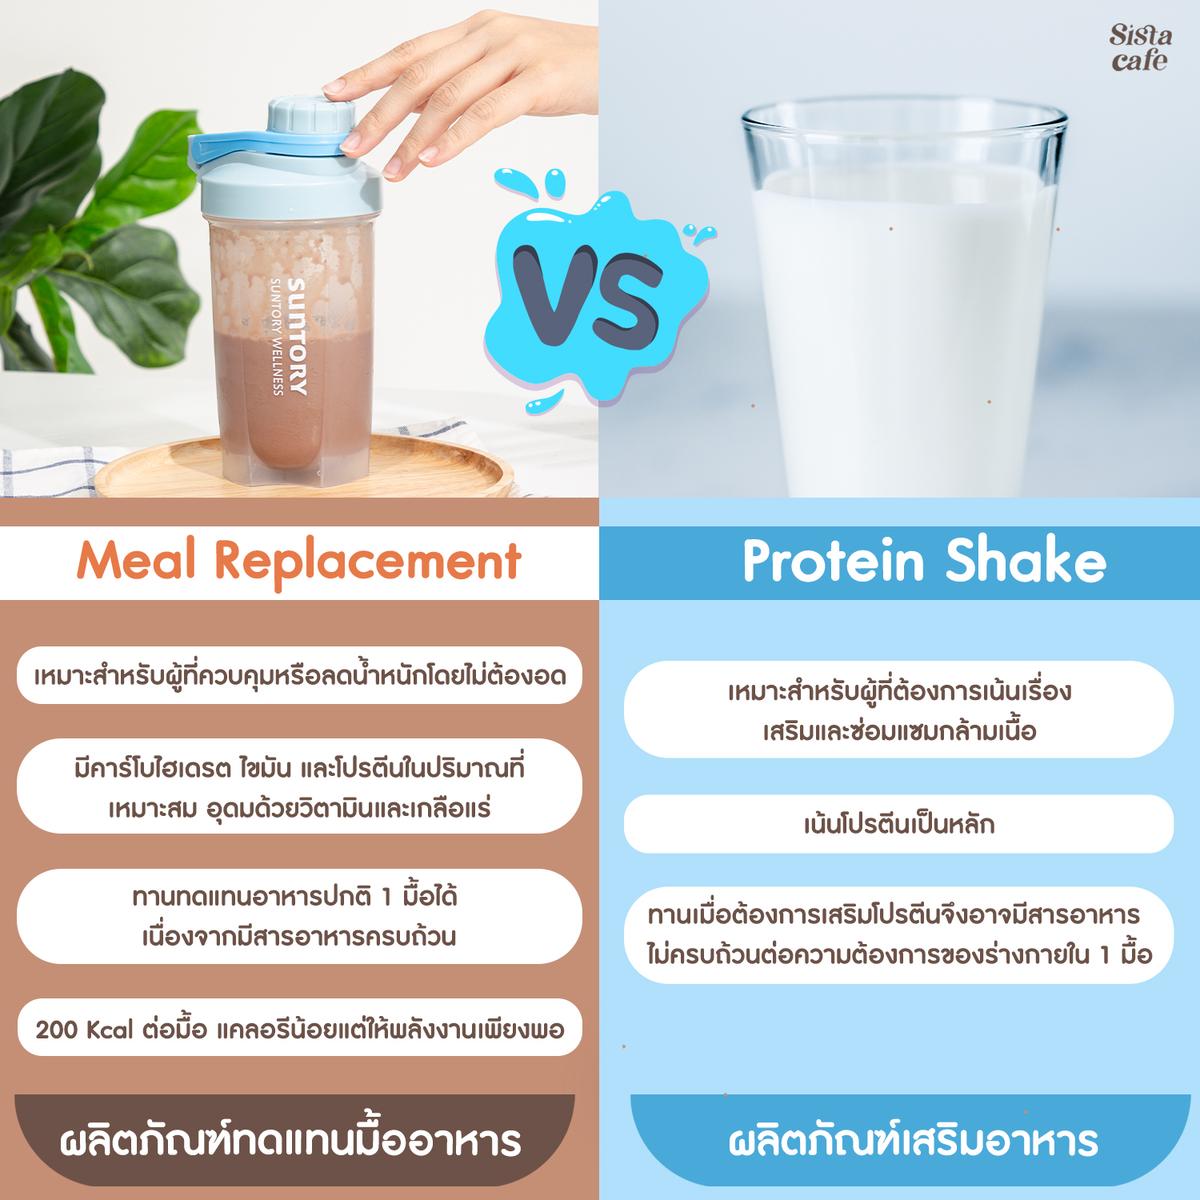 รูปภาพ:Meal Replacement ต่างกับ Protein Shake อย่างไร